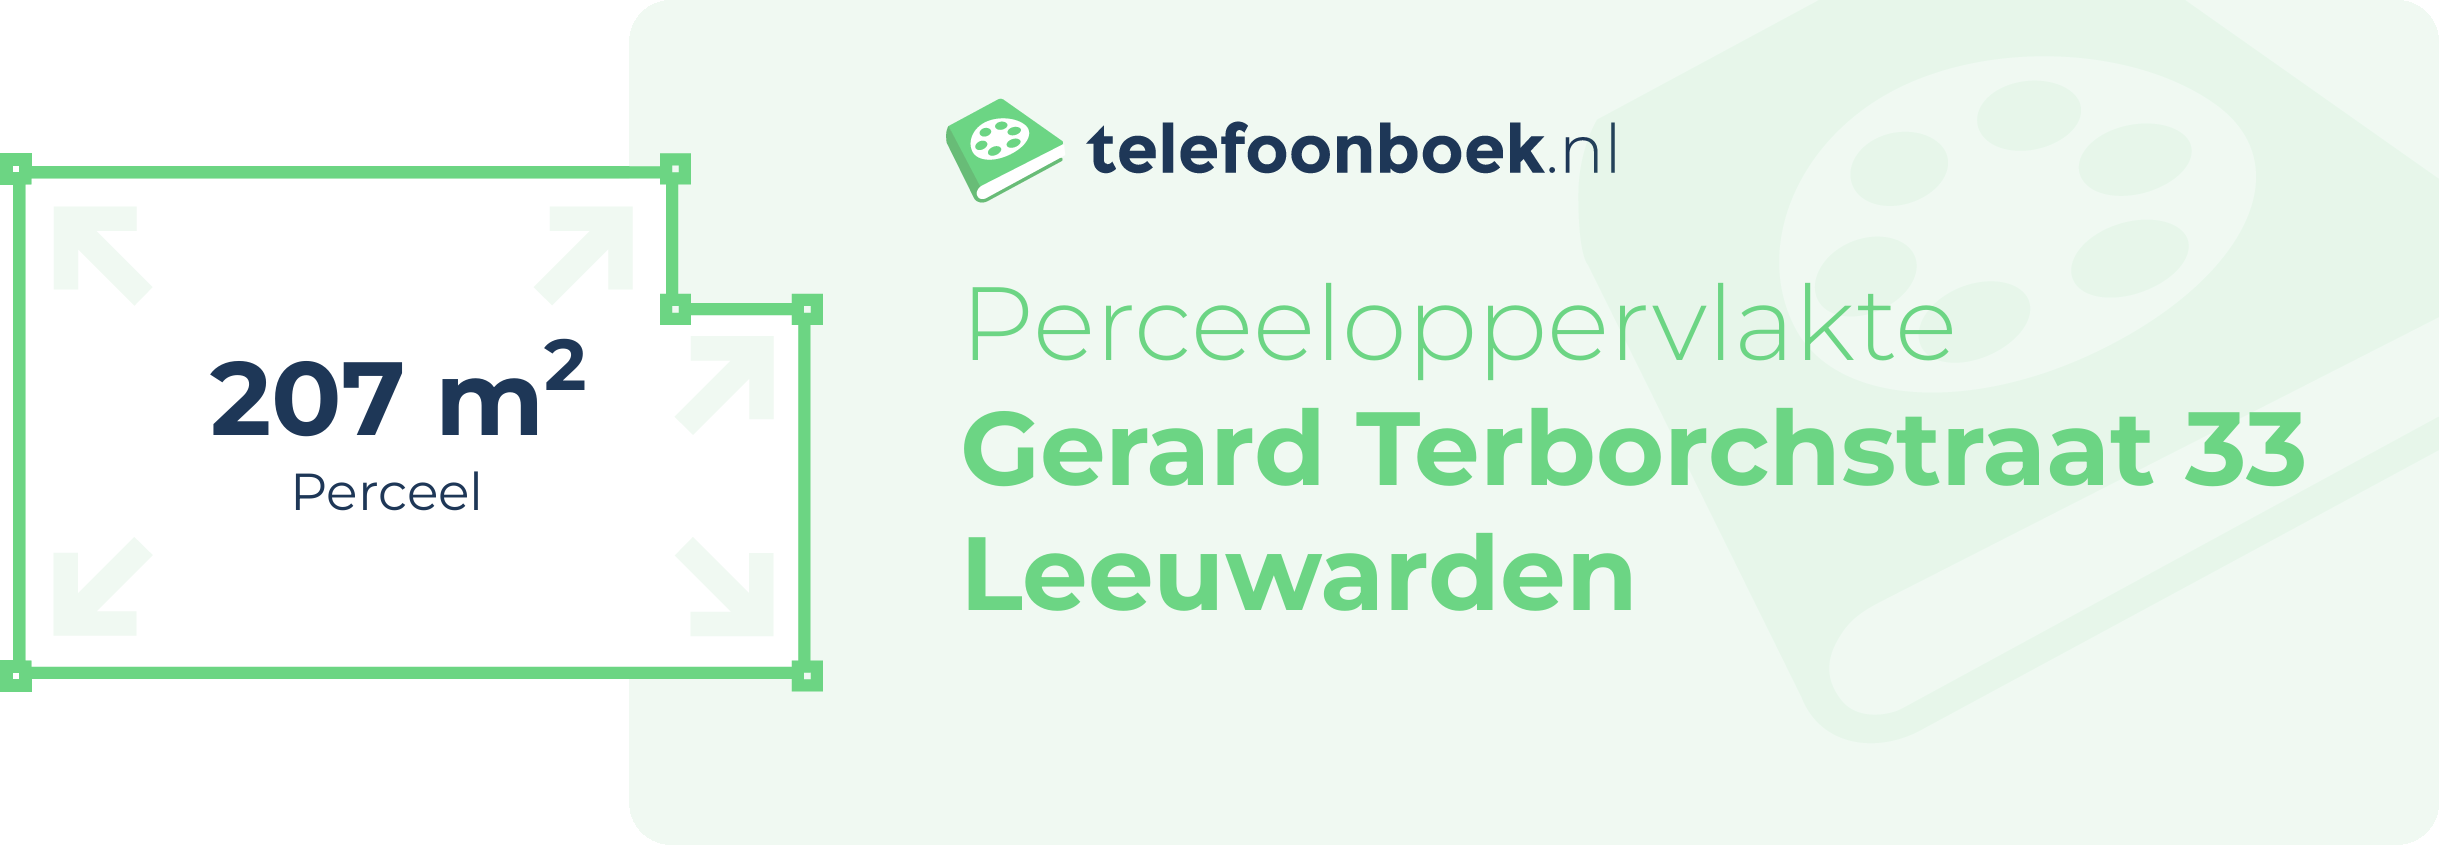 Perceeloppervlakte Gerard Terborchstraat 33 Leeuwarden